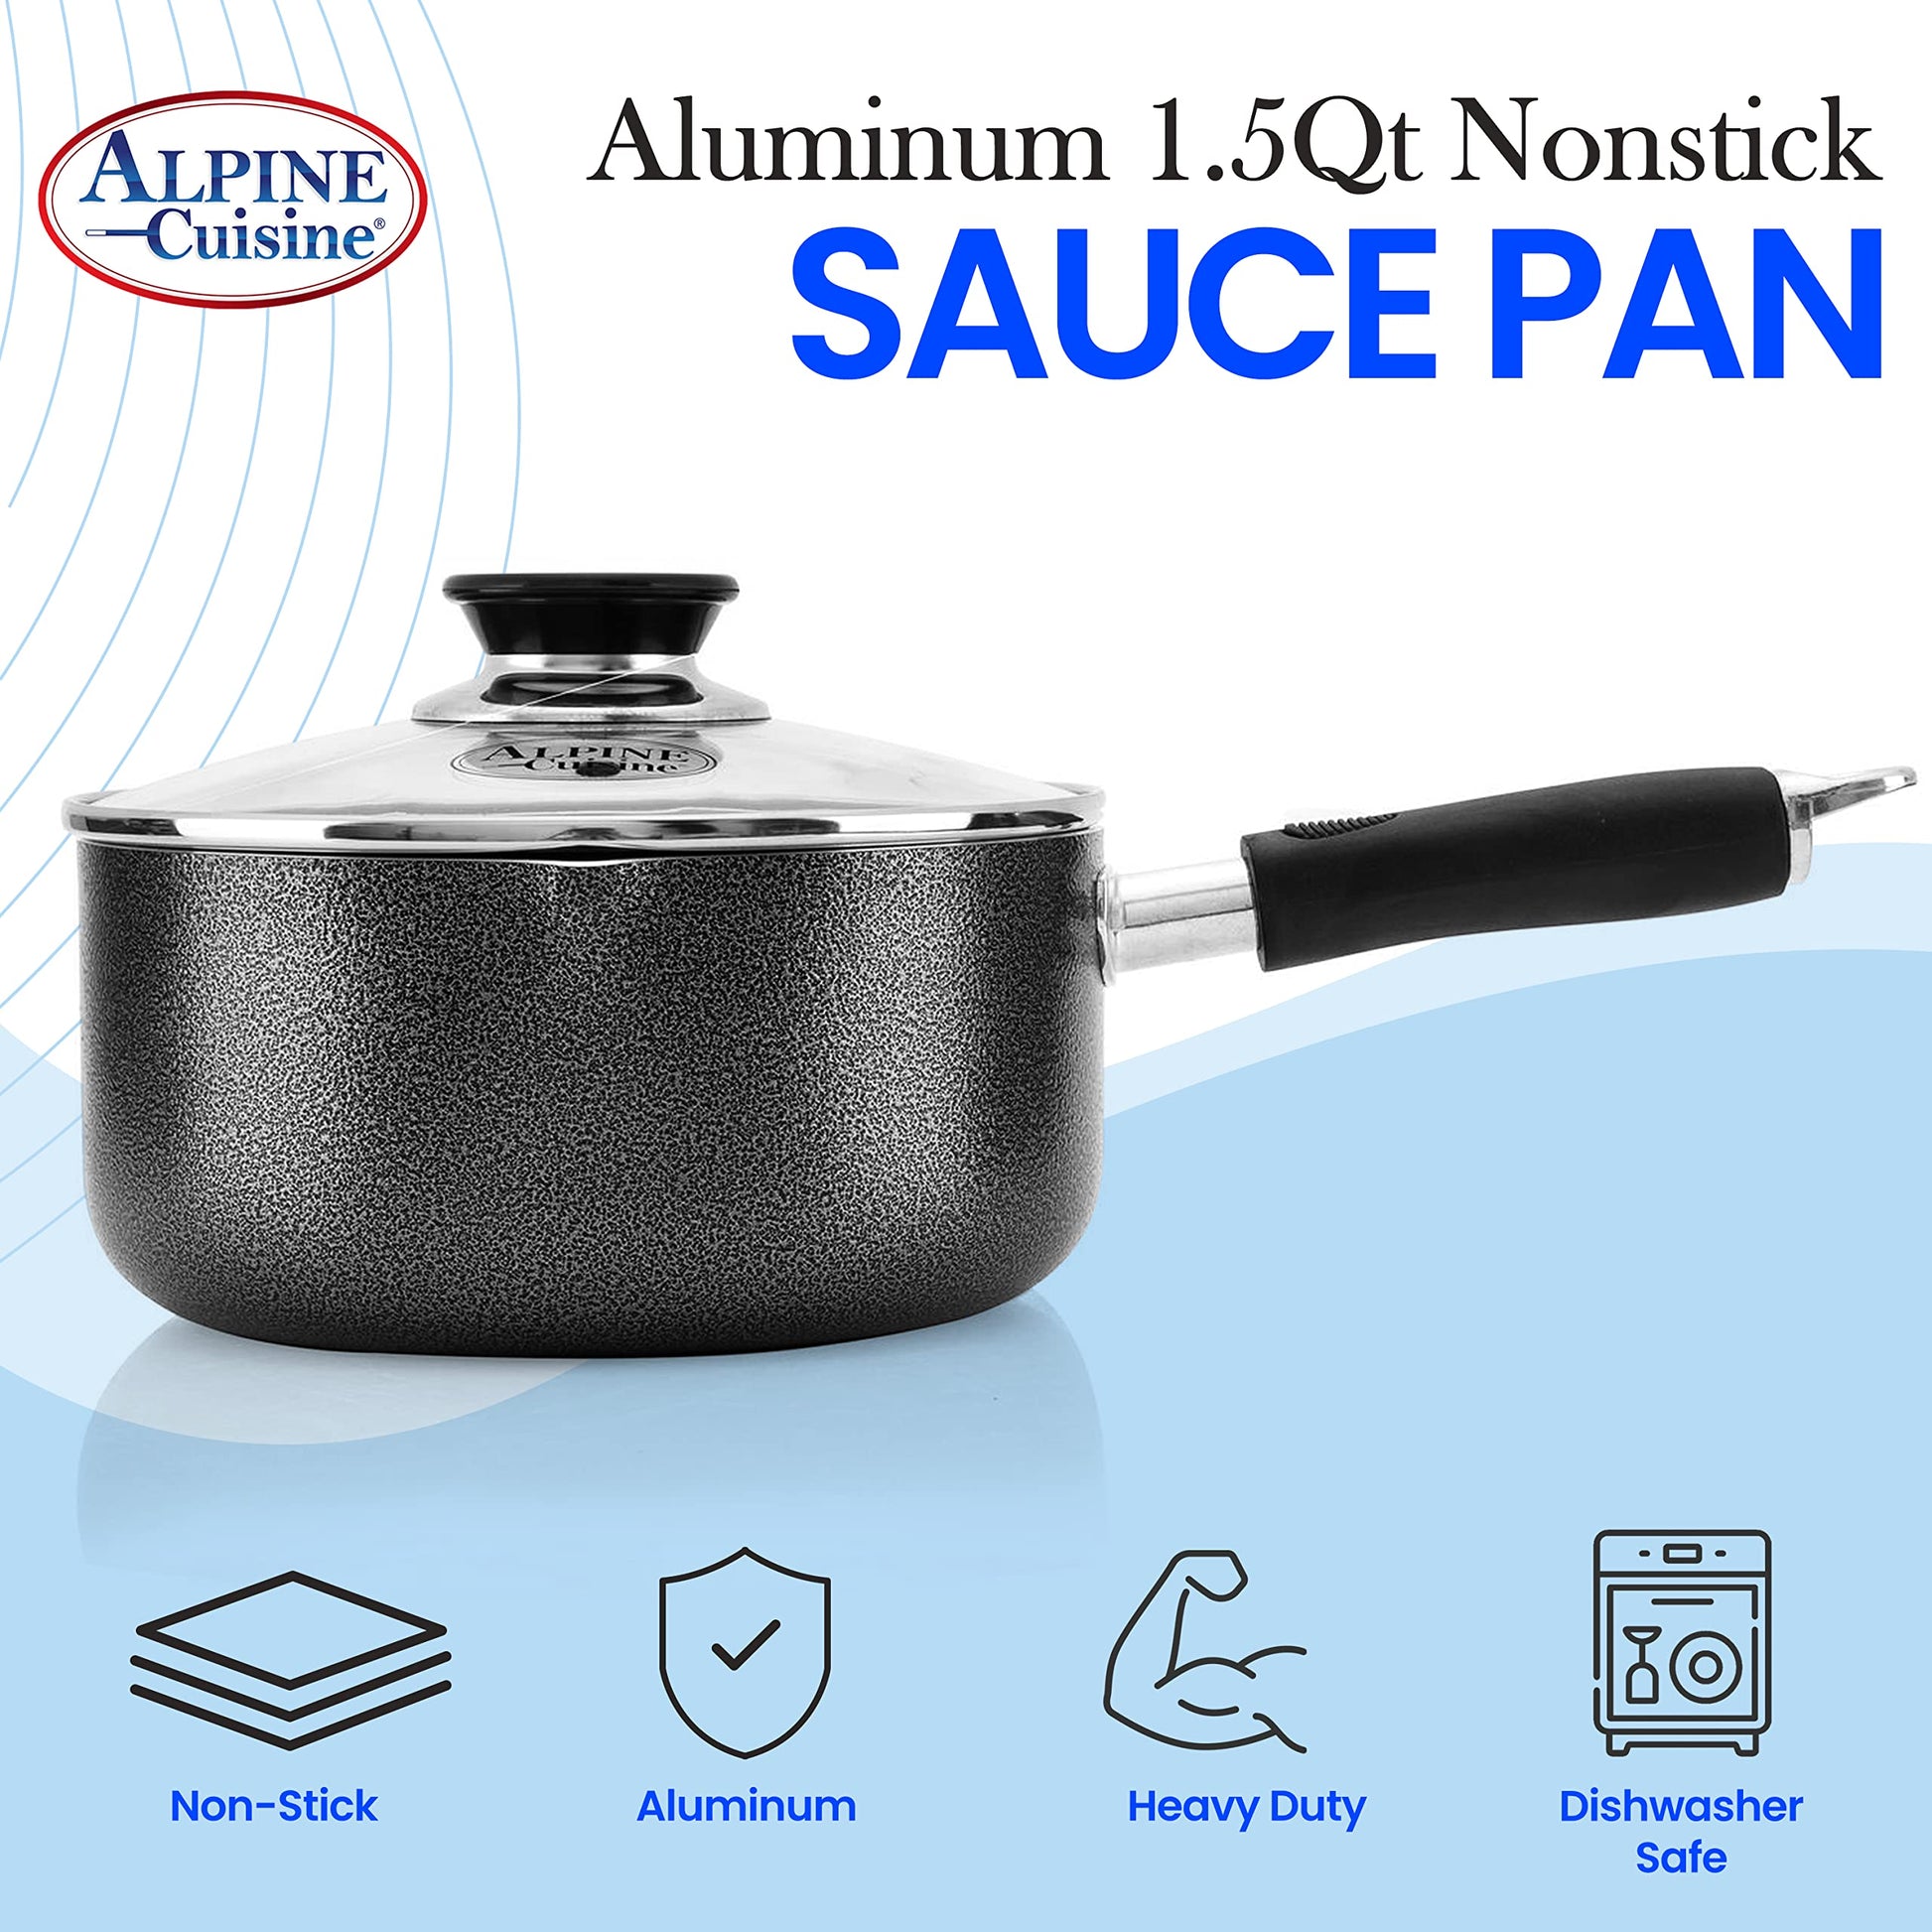 Alpine Cuisine Sauce Pan 1.5qt Aluminum Nonstick Coating Soft Touch Ba